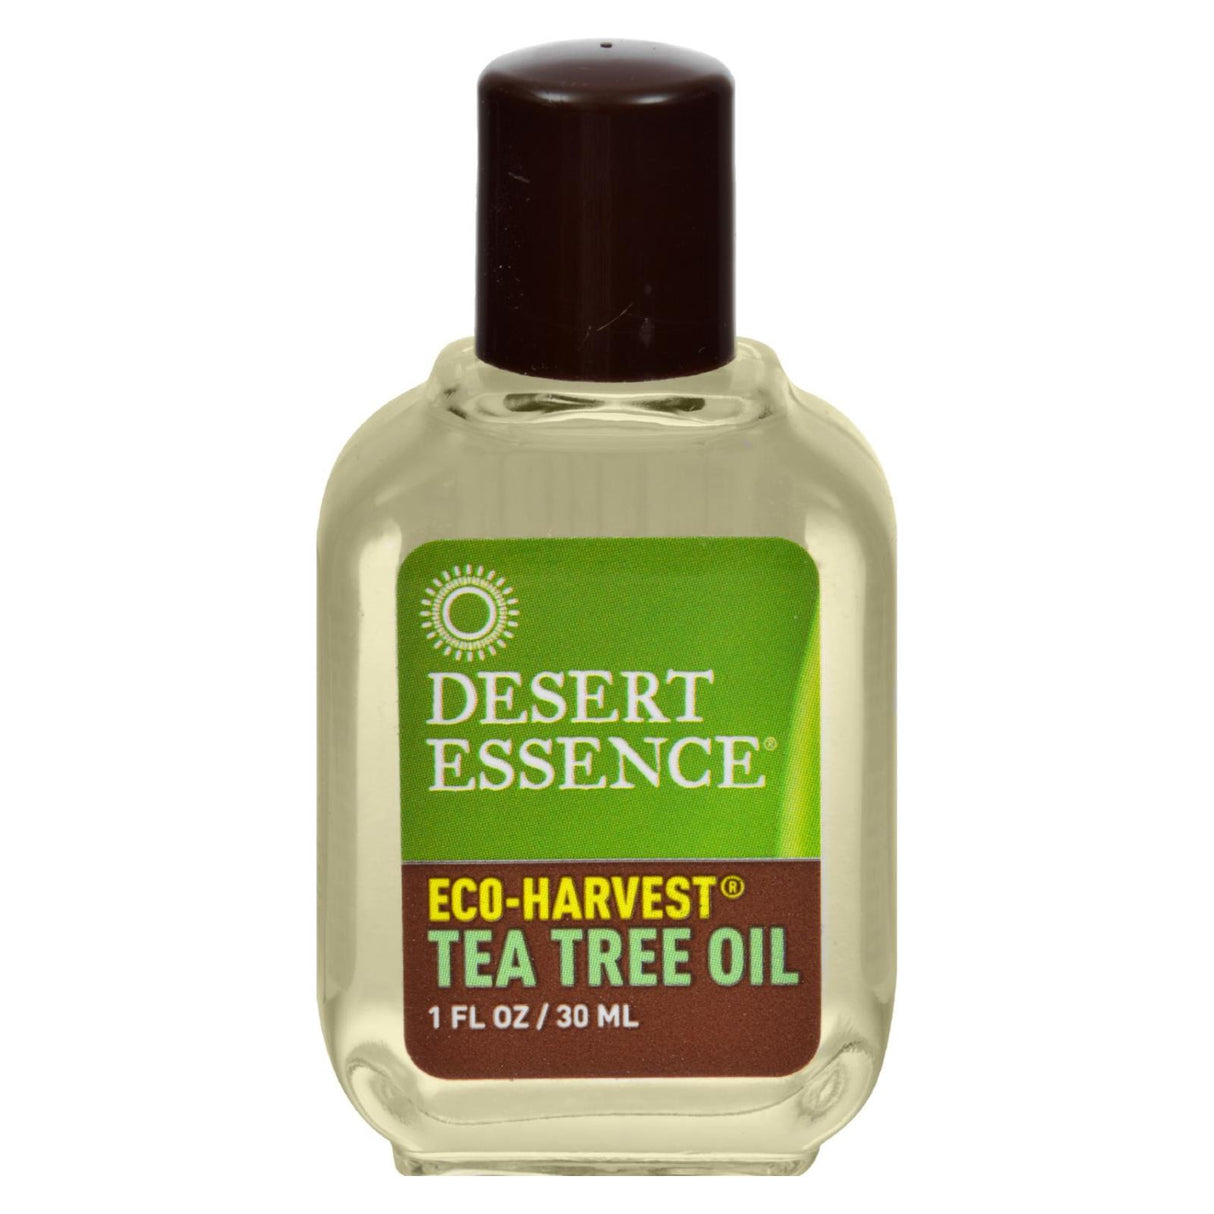 Desert Essence Tea Tree Oil, 1 Fl Oz - Cozy Farm 